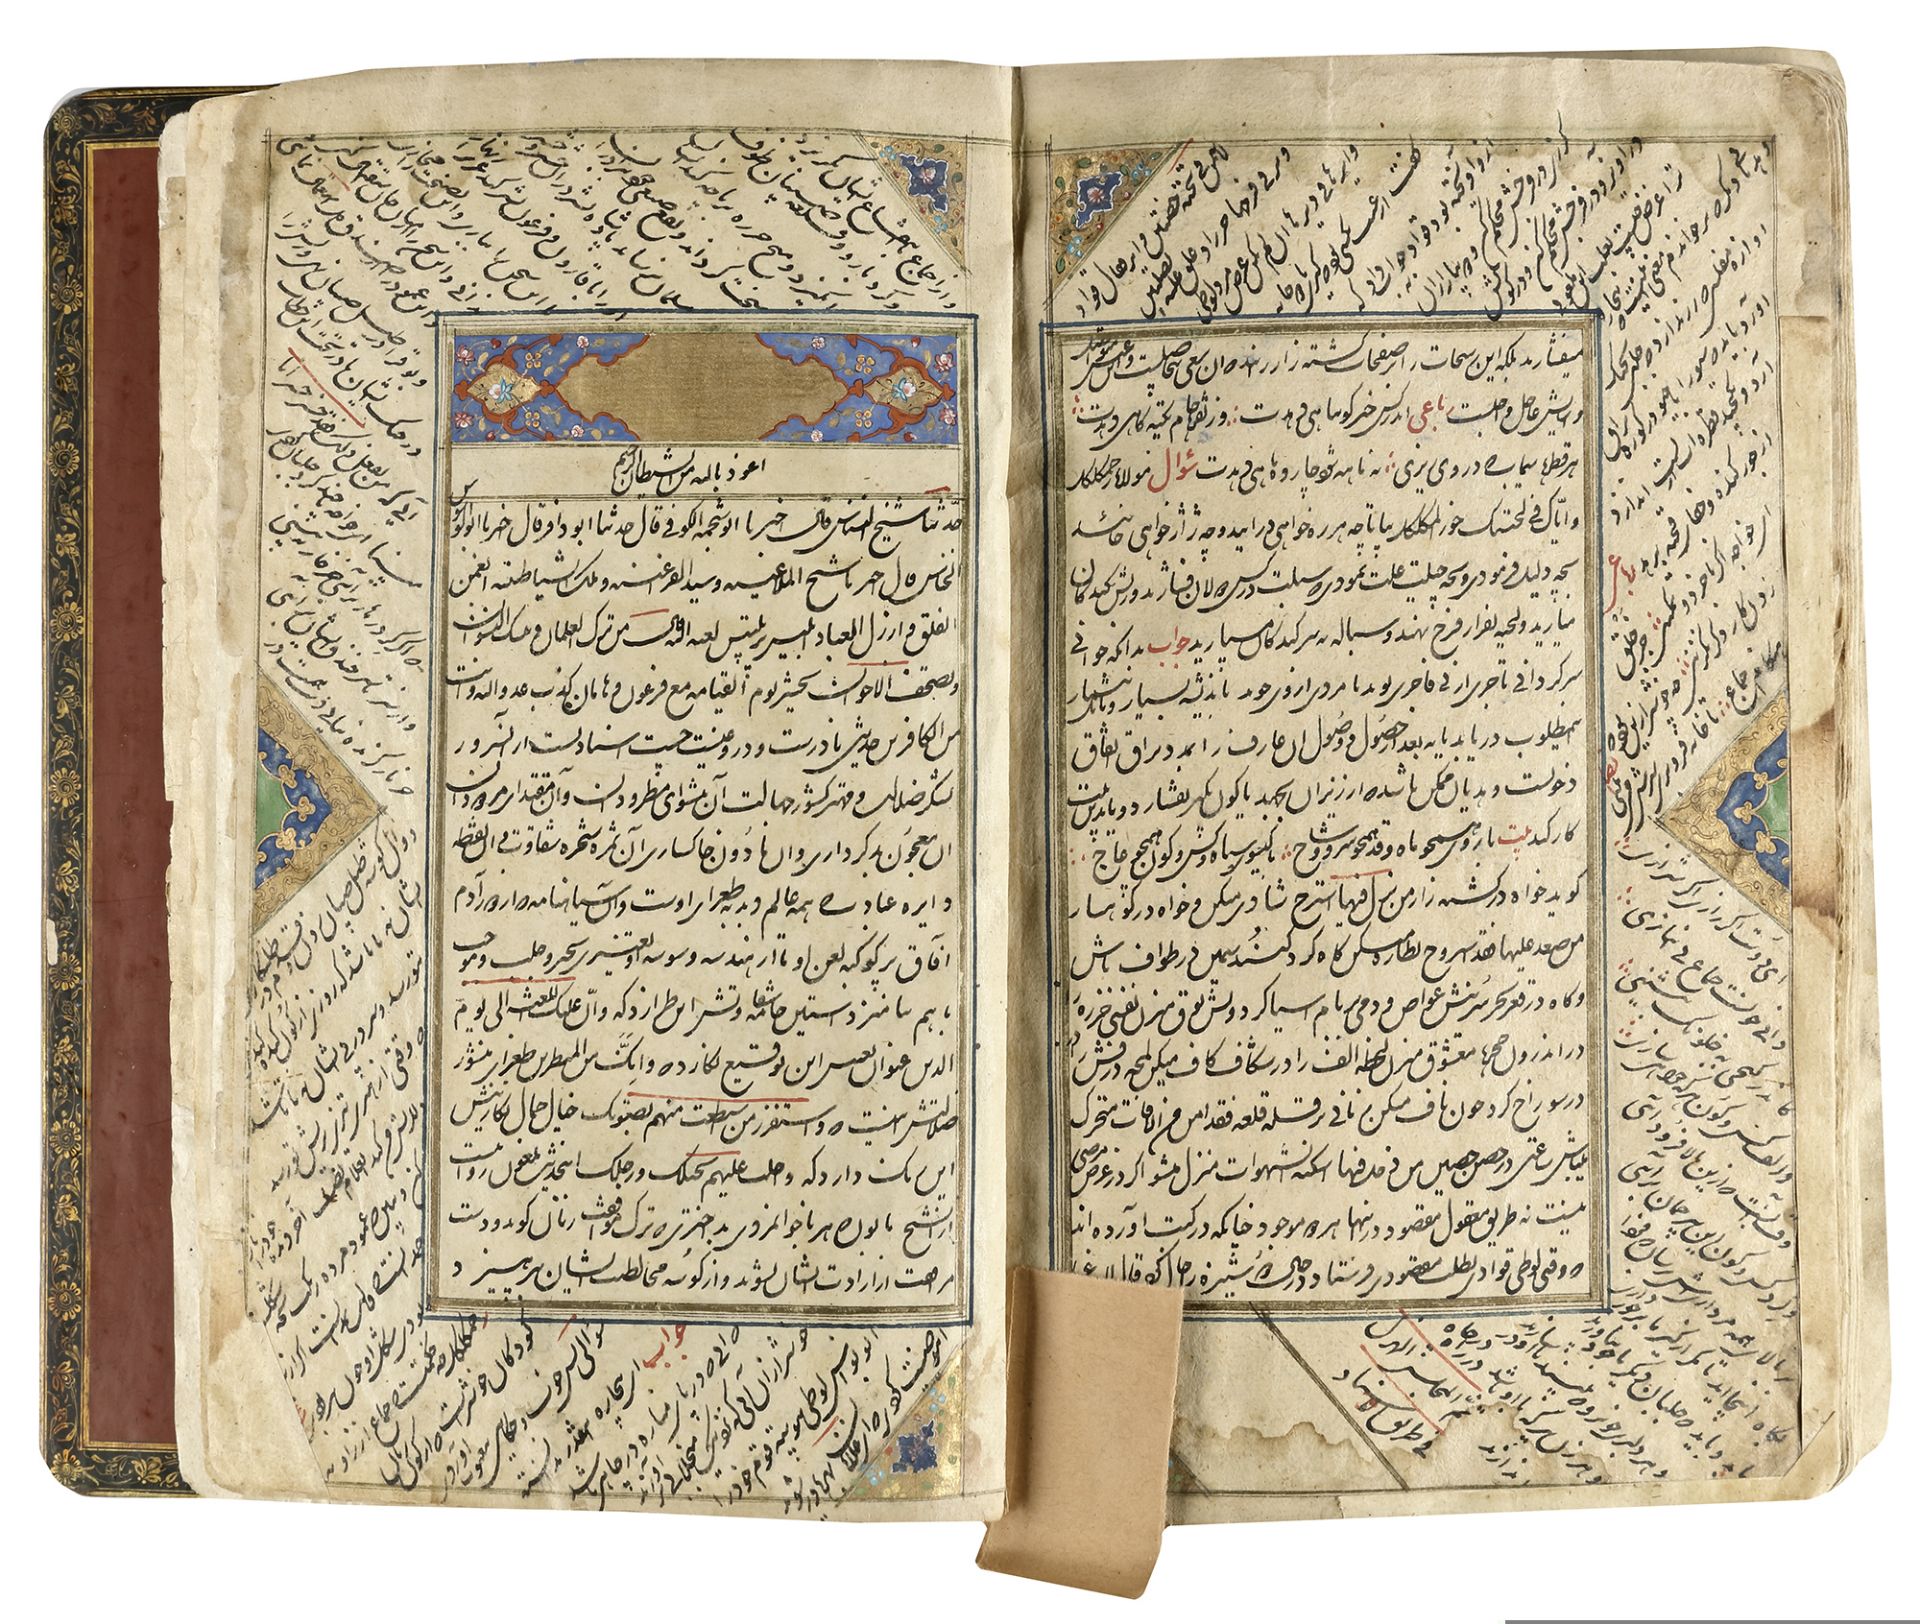 A COMPLETE WORK OF SAADI, KOLIYAT SAADI, PERSIA-QAJAR, 1235 AH/1819 AD - Image 7 of 11